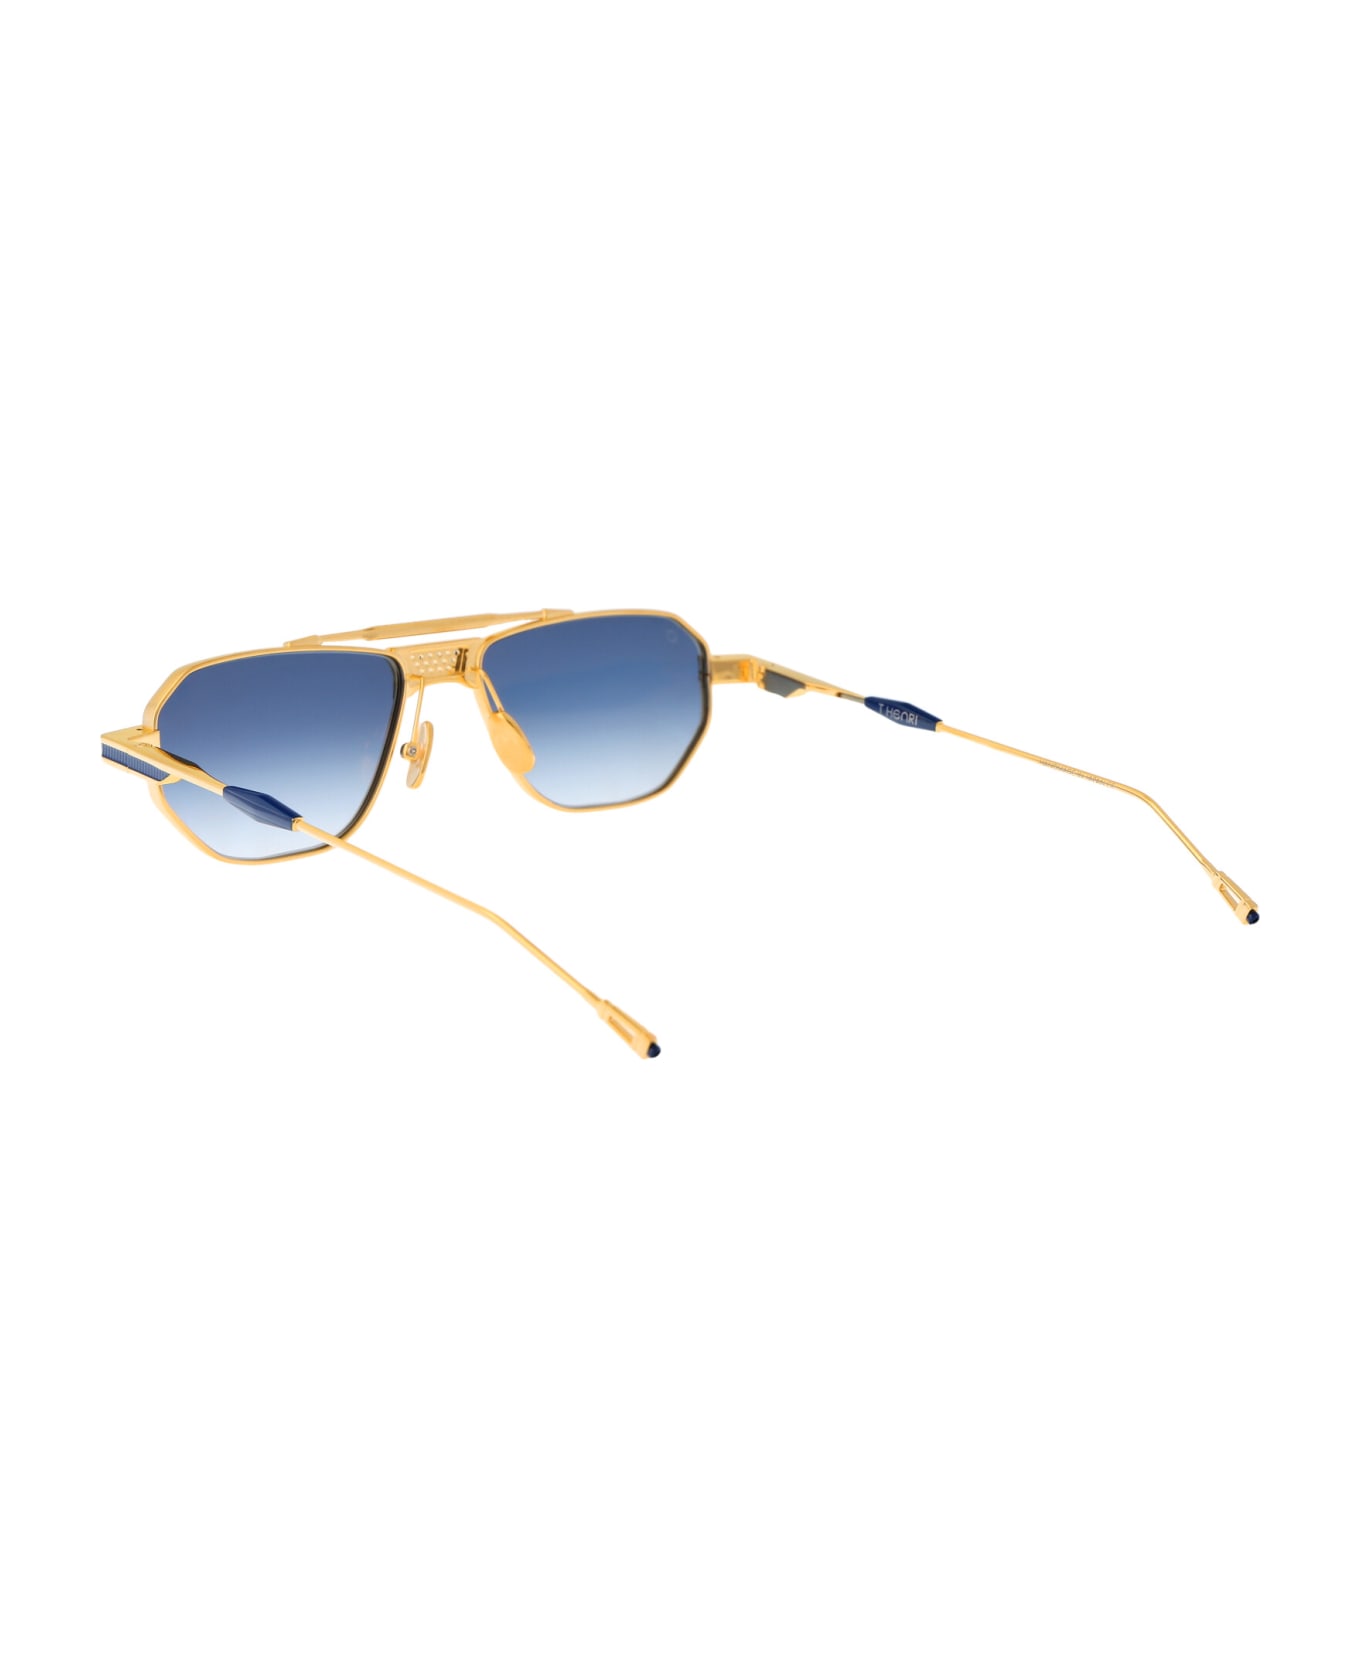 T Henri Longtail Sunglasses - L'OR BLEU